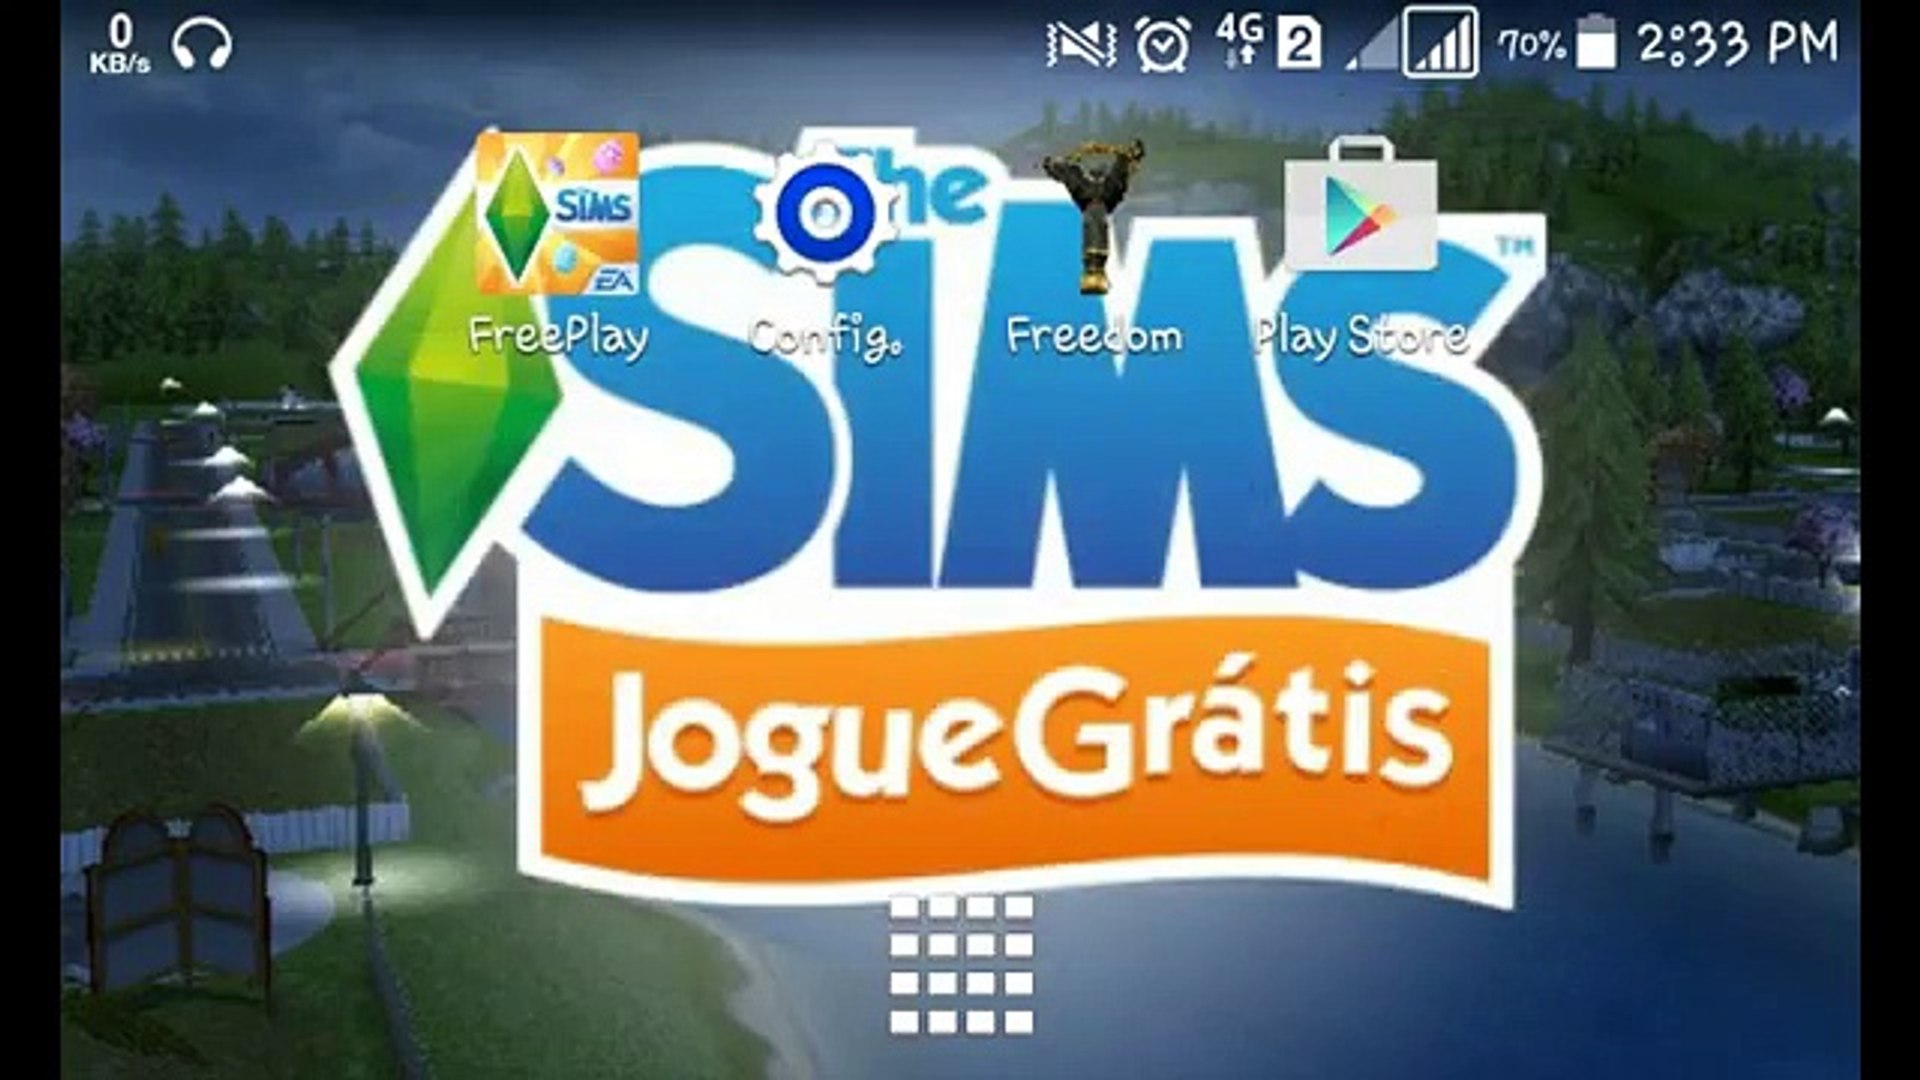 The sims freeplay dinheiro infinito vip